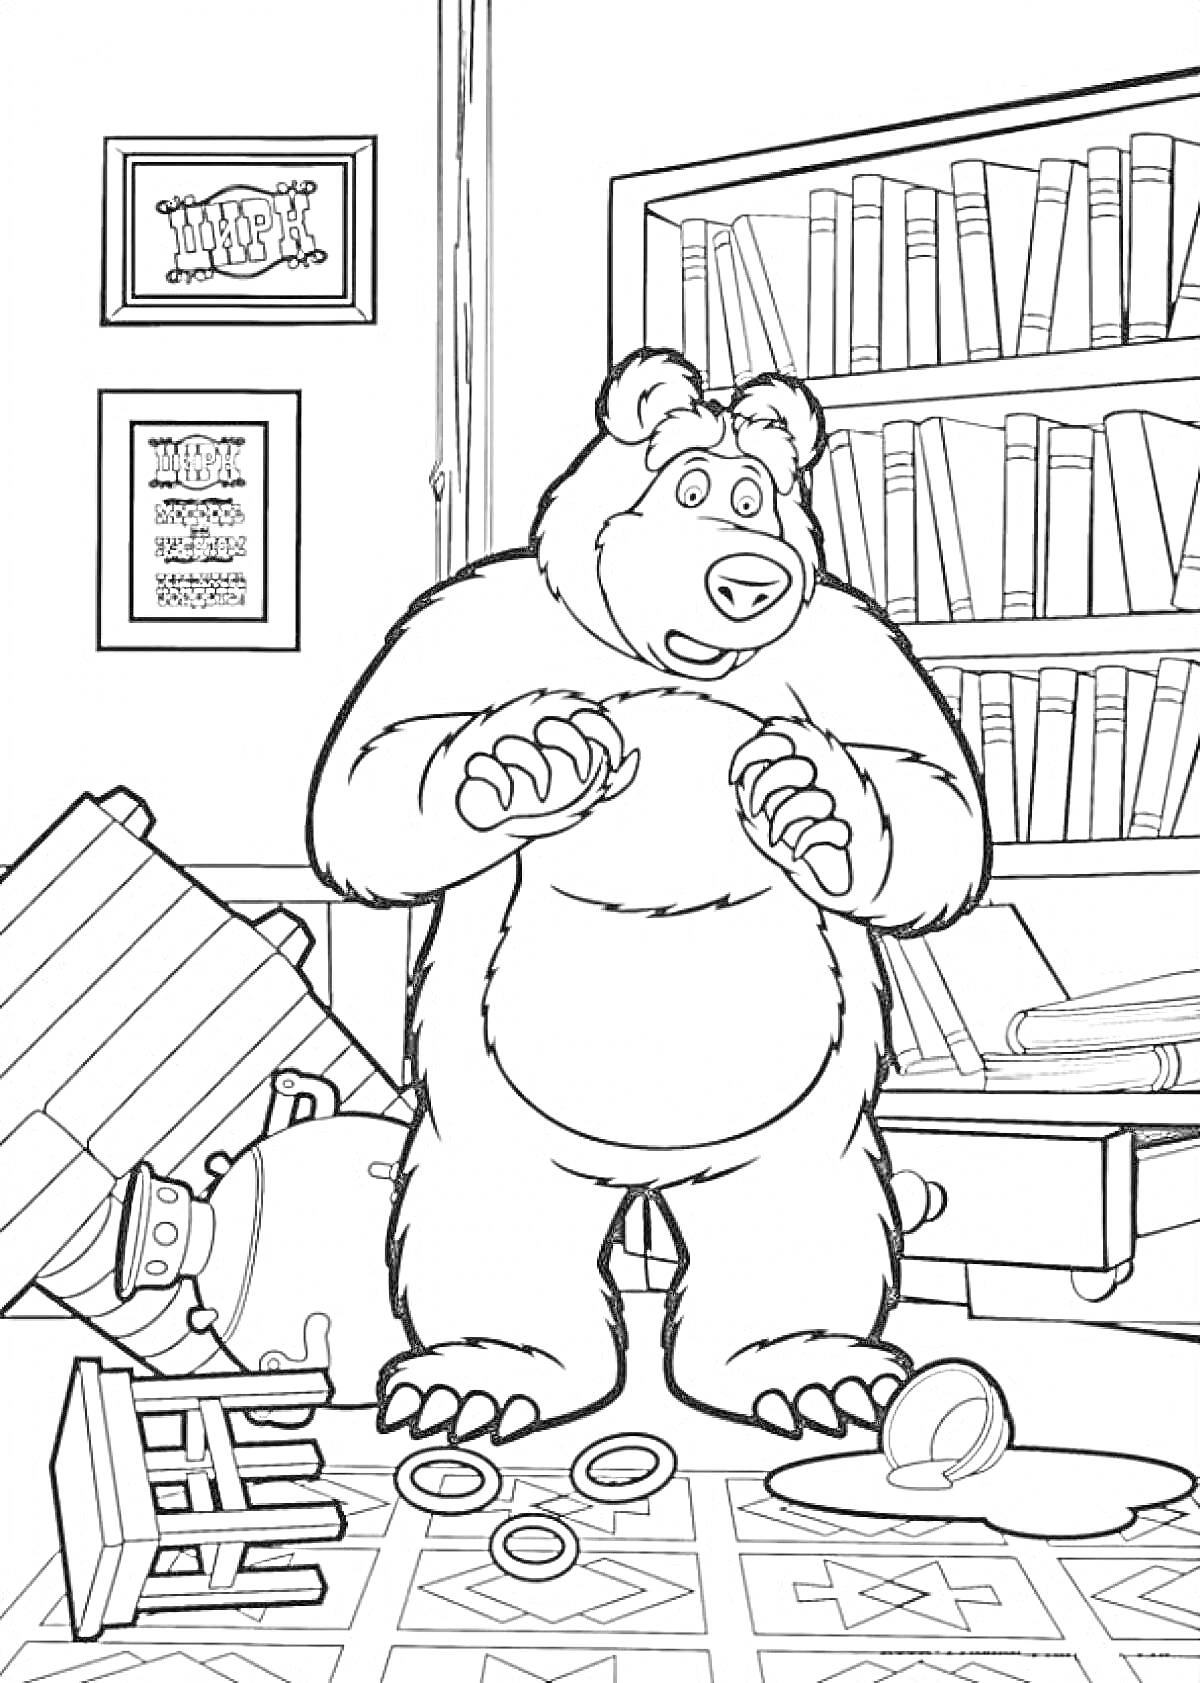 Раскраска Медведь в беспорядке: перевернутые книги, кружка, кольца на полу, стул и стол завалены